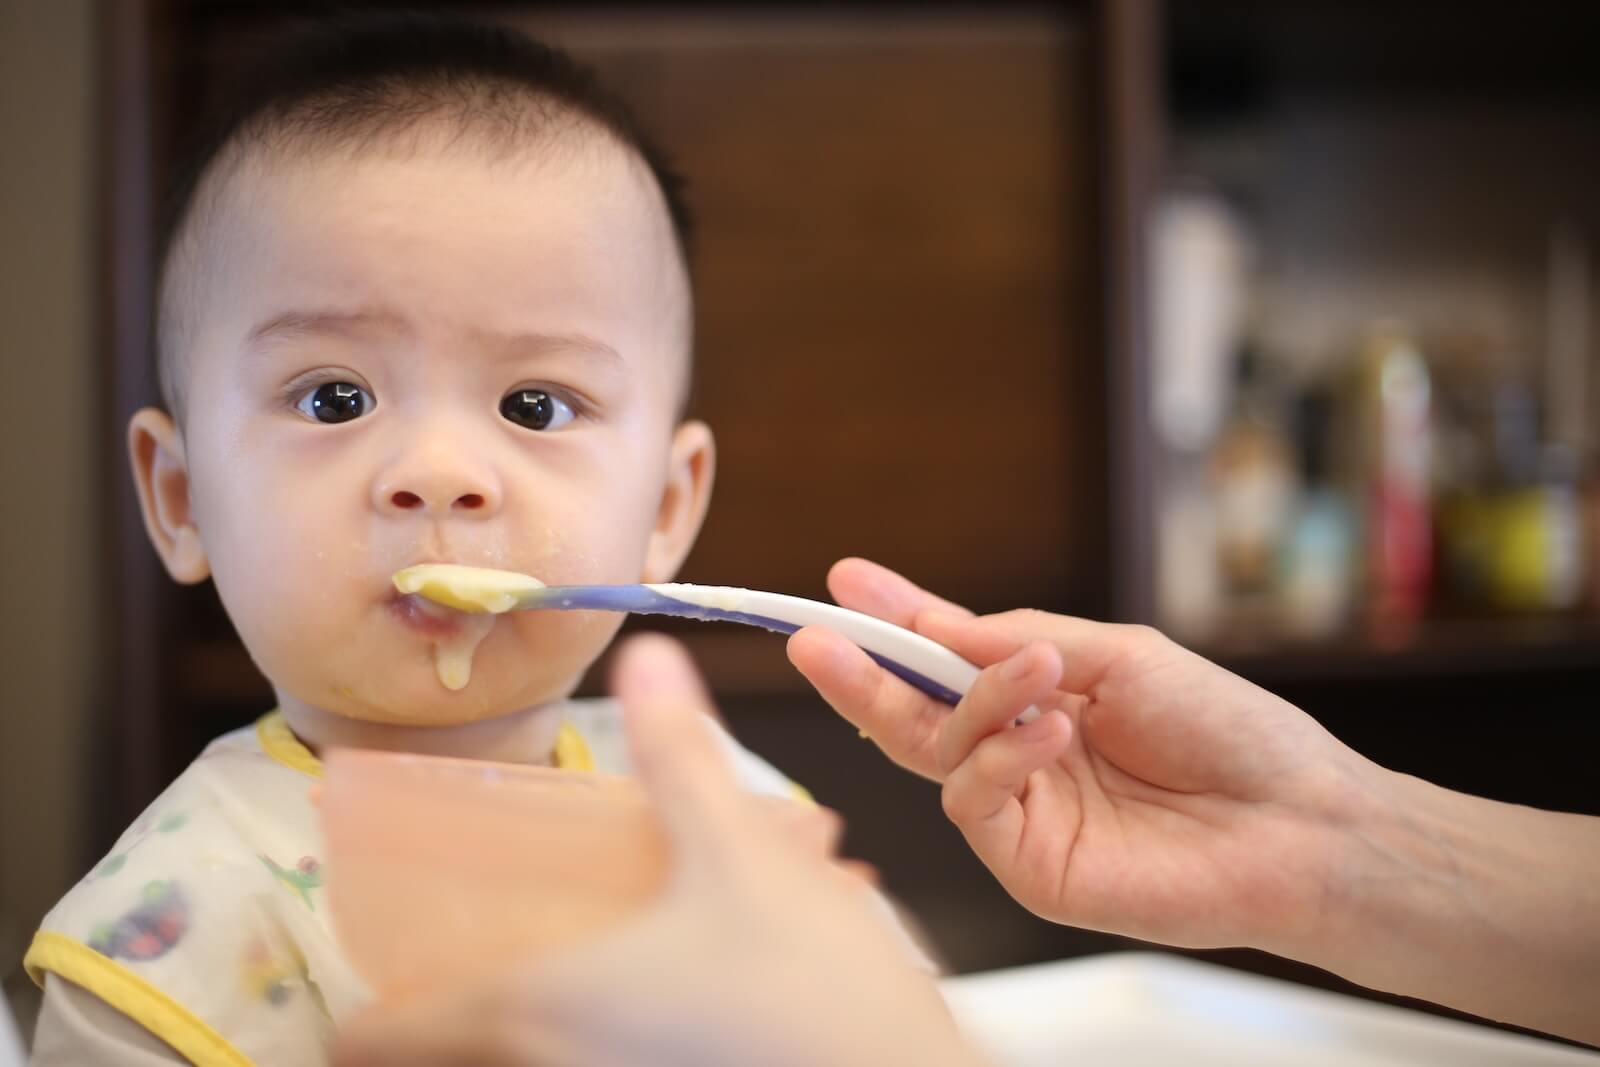 Mejores alimentos para bebés: Las 5 marcas más recomendadas por expertos -  Study Finds